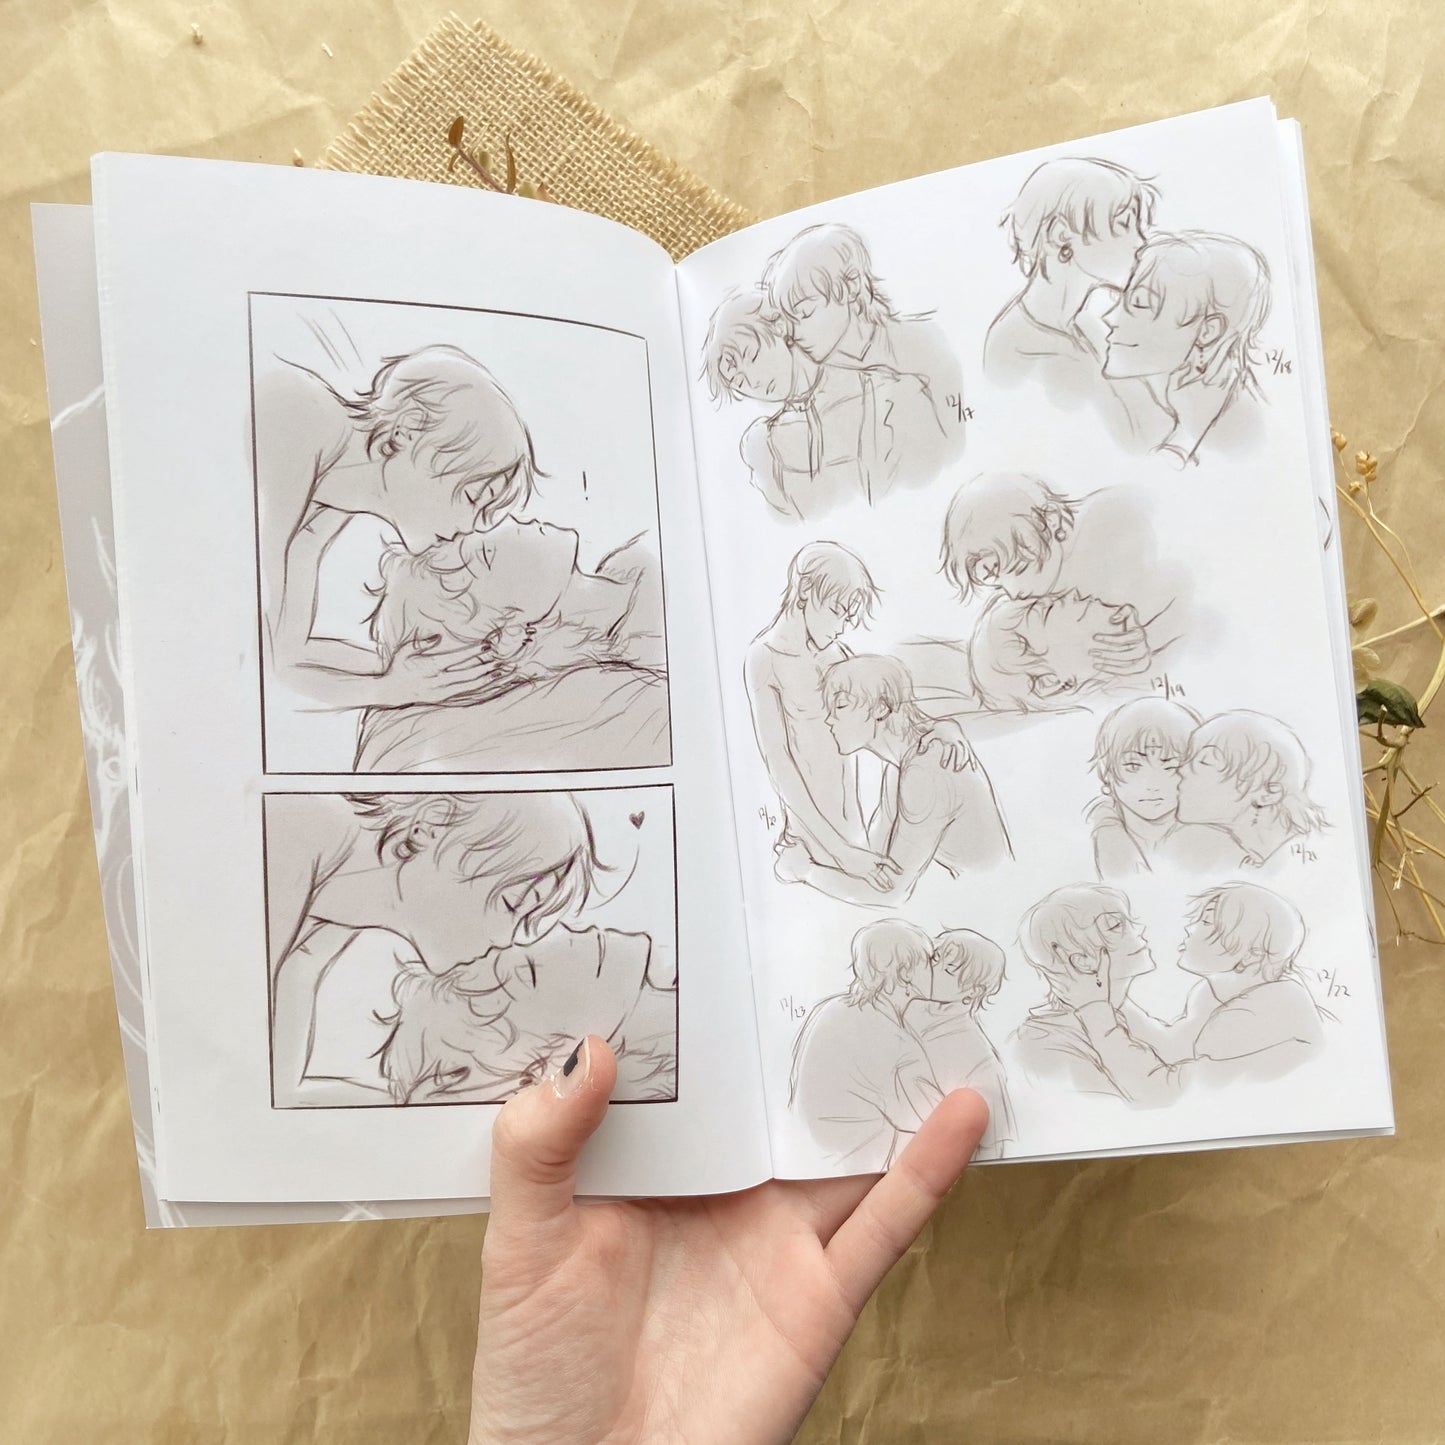 Hisokuro 18+ Sketchbook Zine